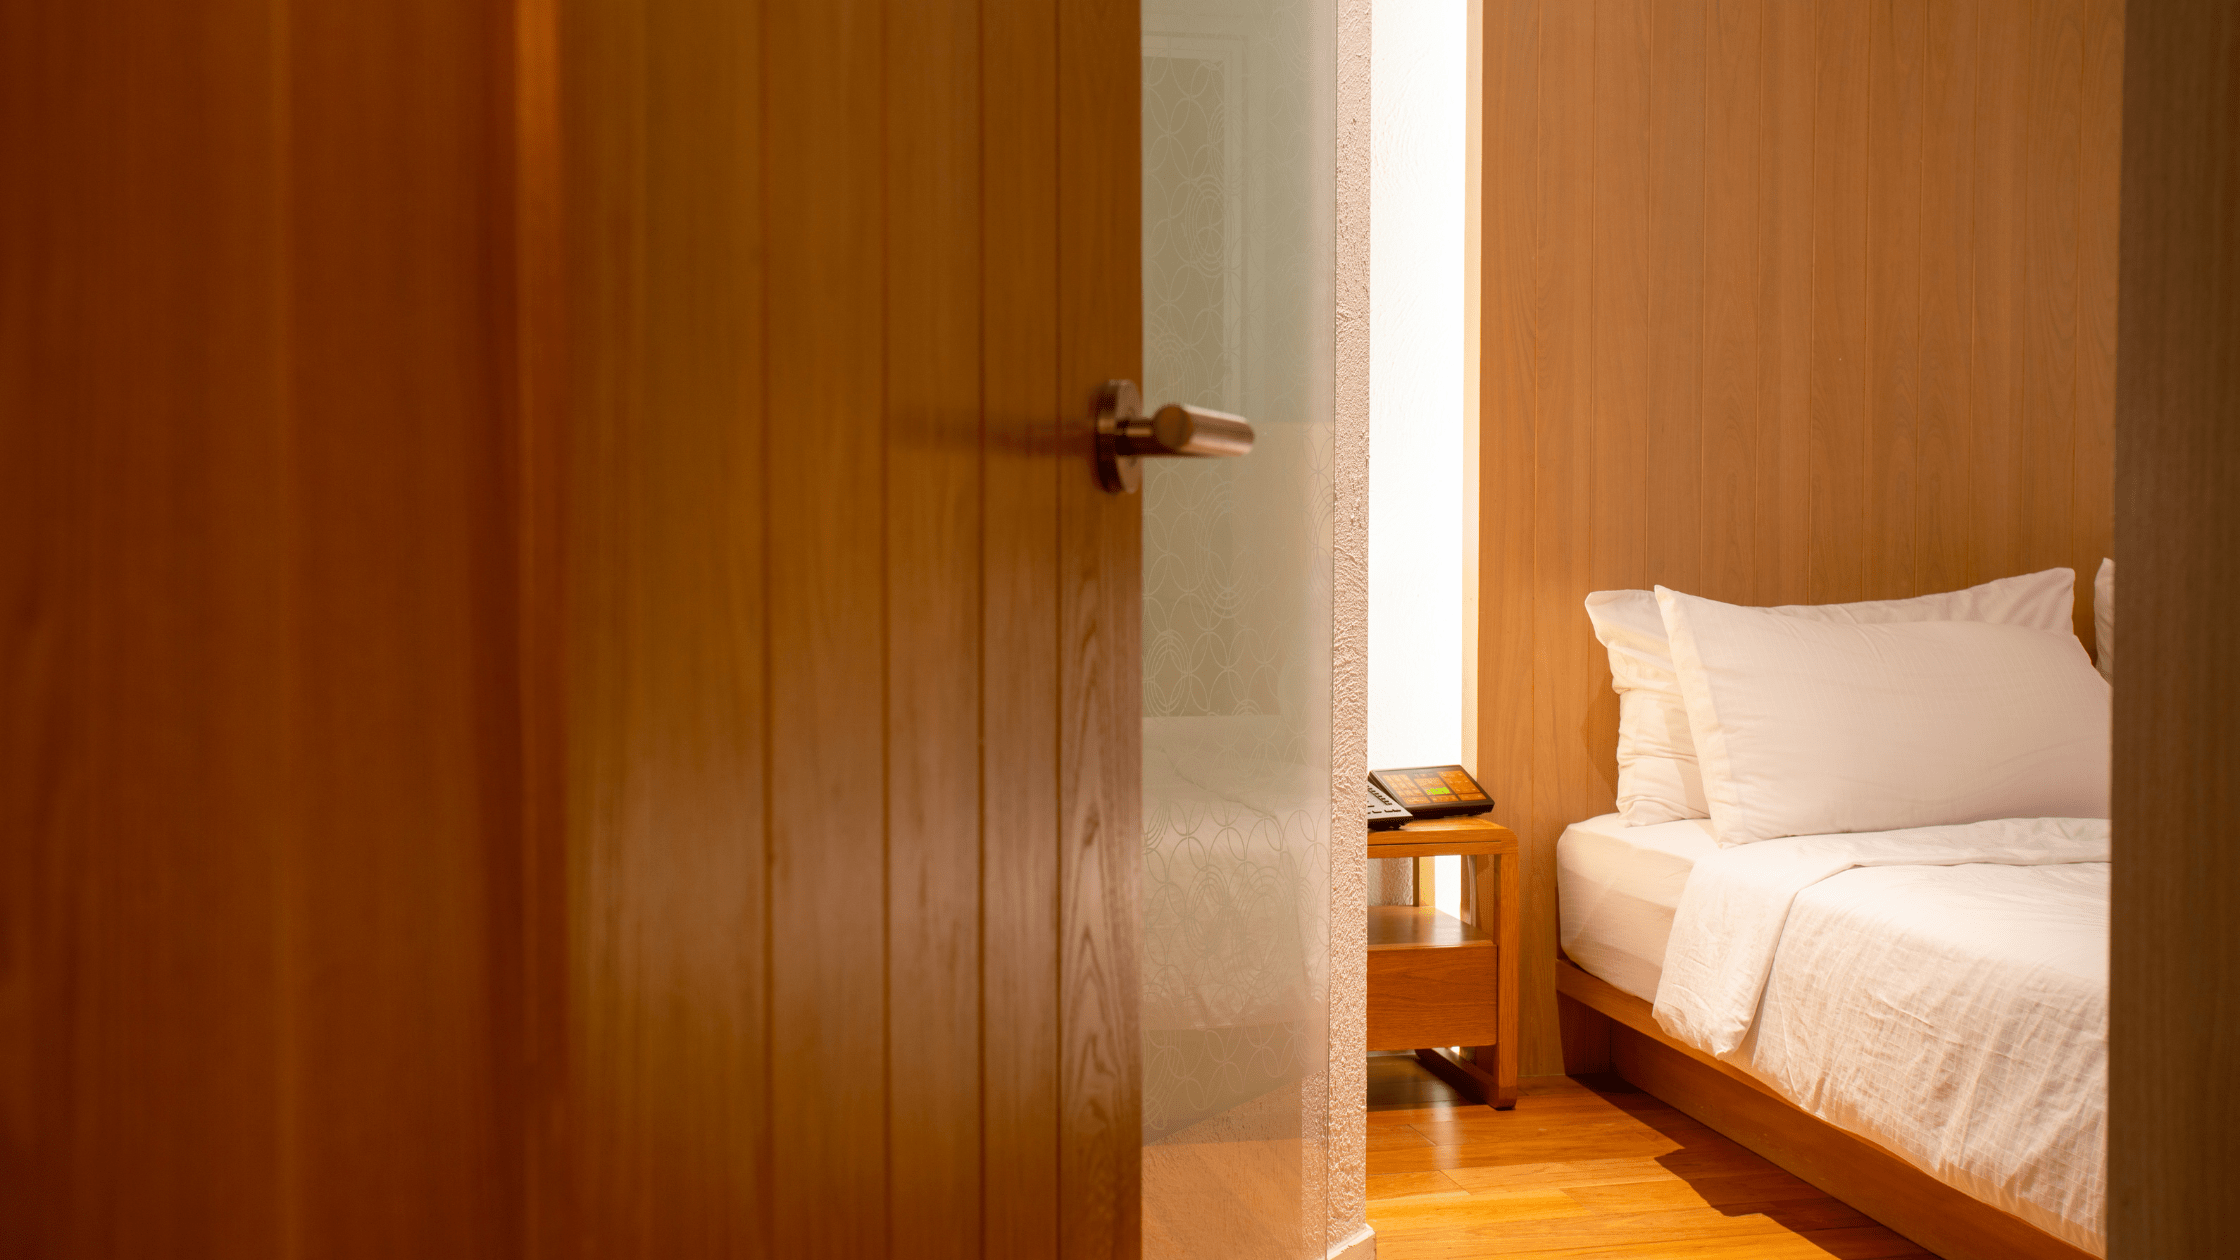 Oak wooden doors opening into a bedroom